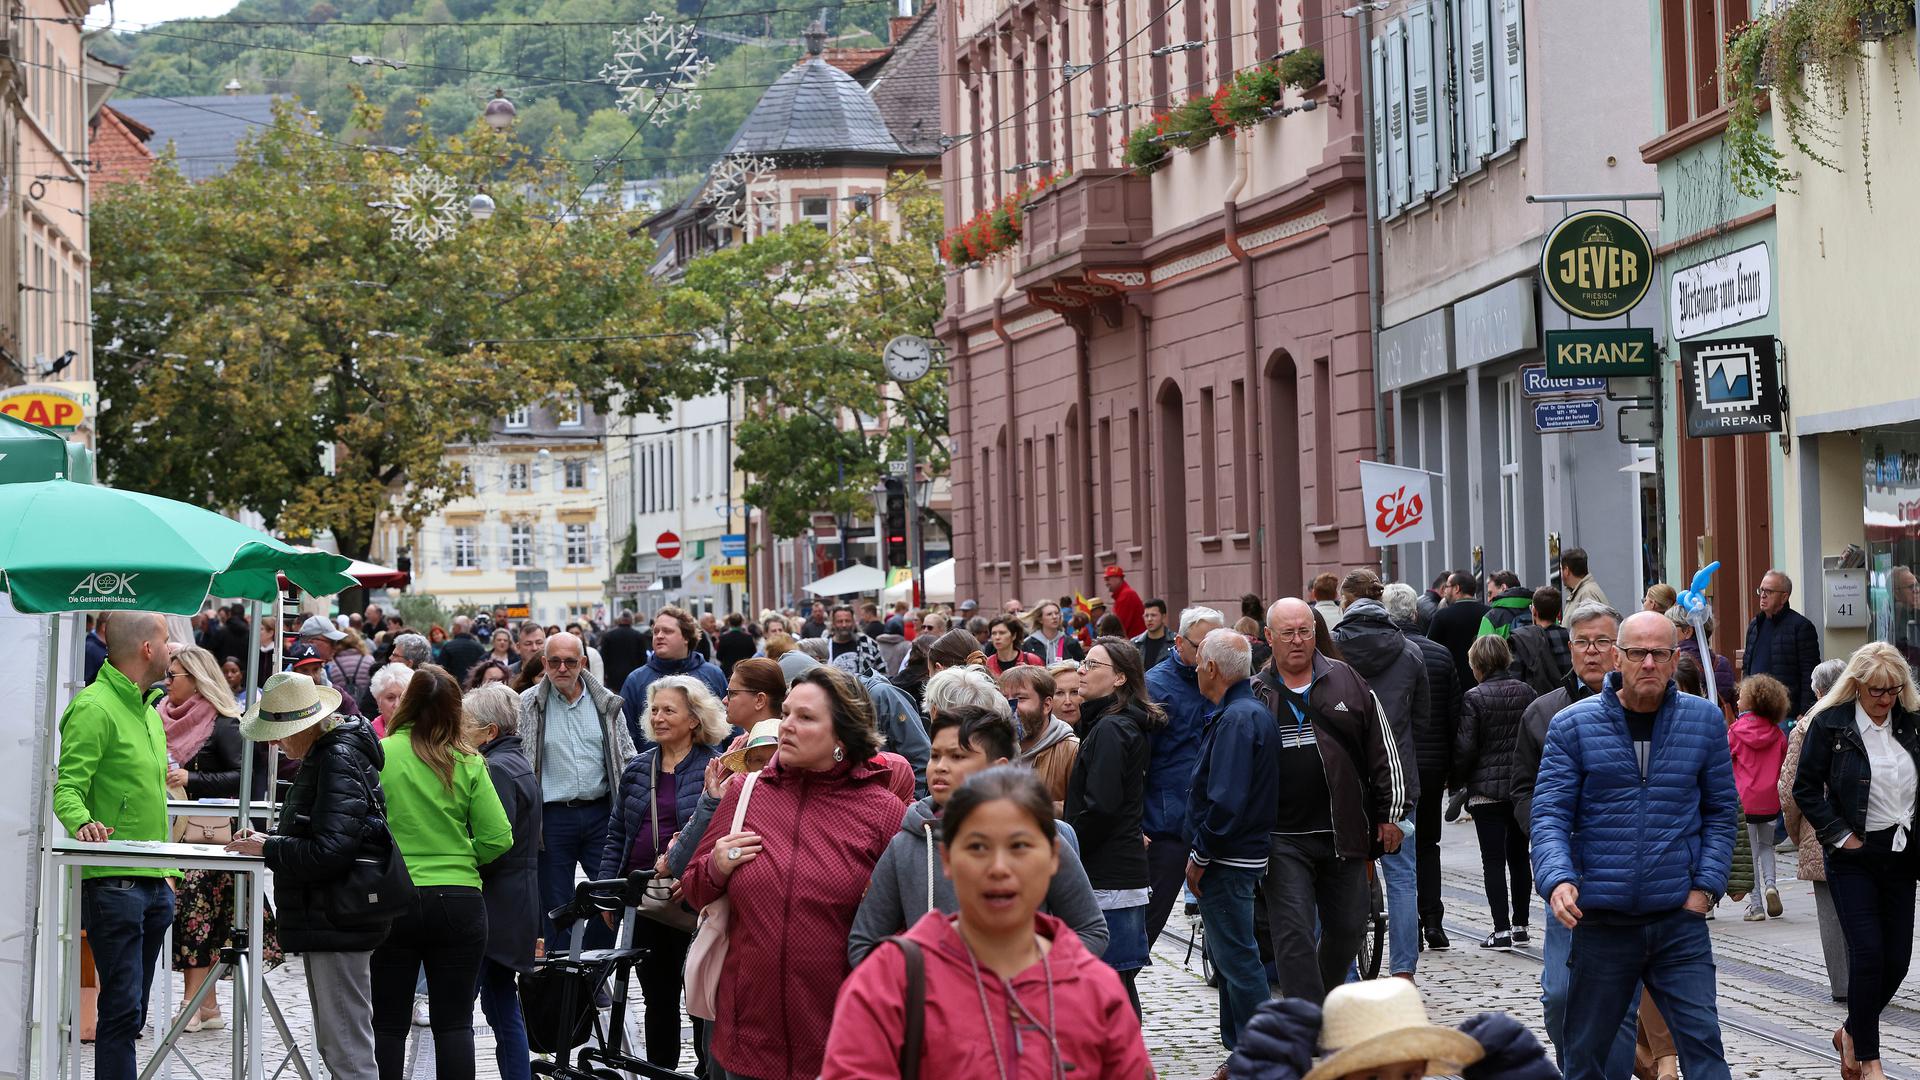 Verkaufsoffener Sonntag in Durlach: Die Karlsruher sind in Stöberlaune und lassen sich durch die Straßen treiben.